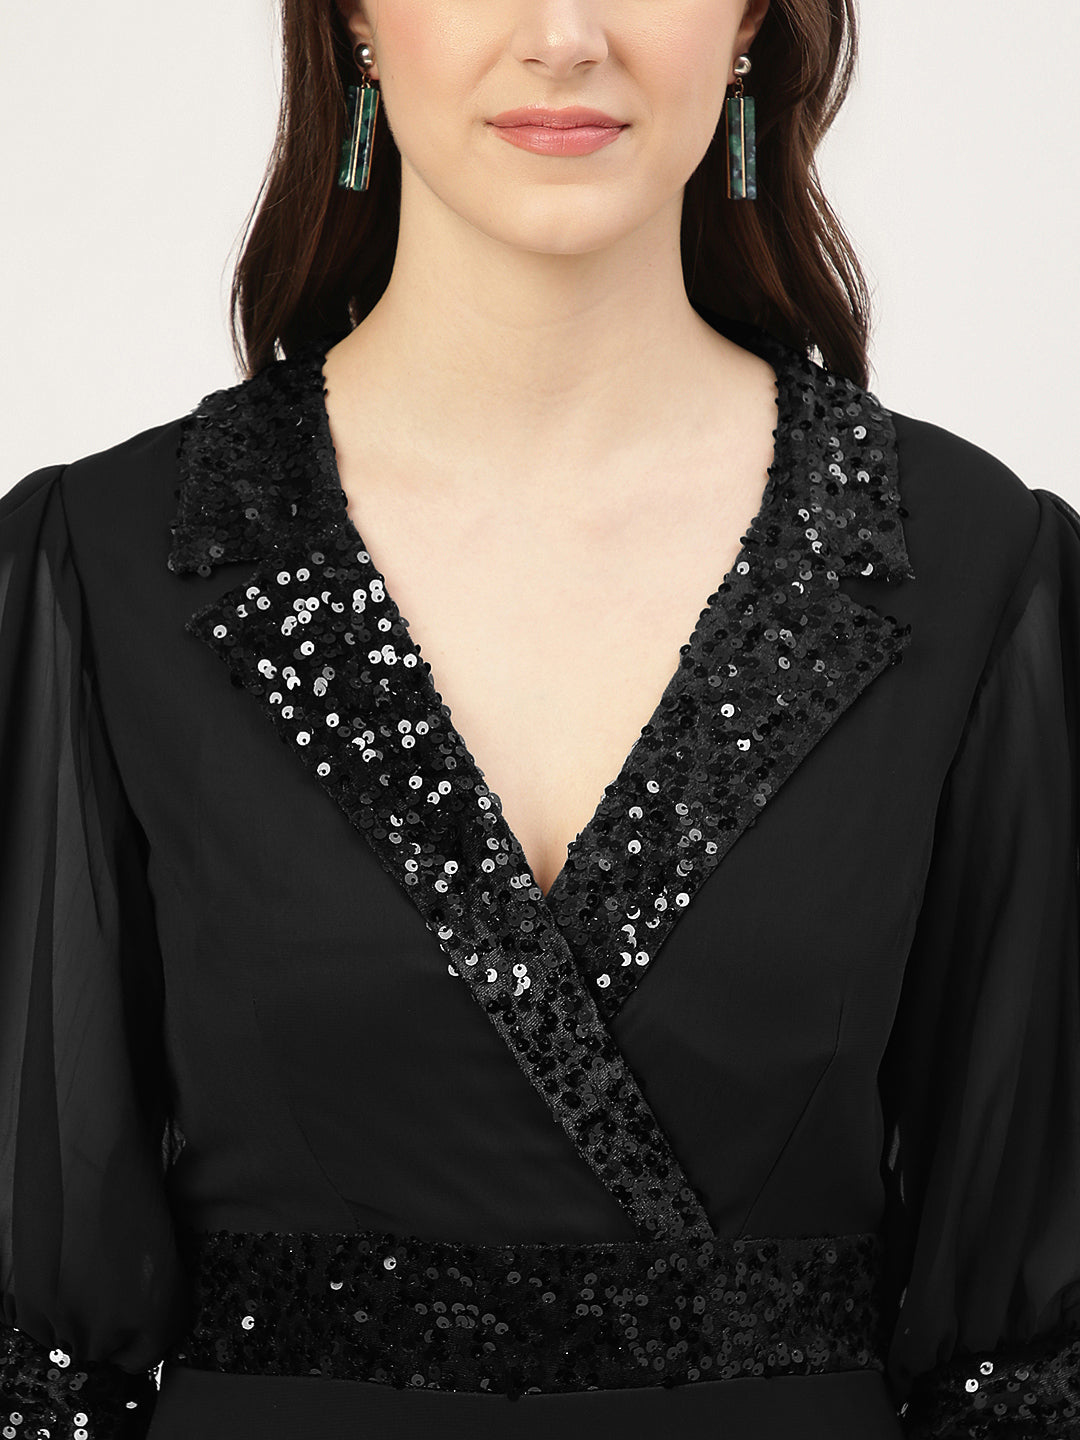 Black Embellished Slit Long Dress with 3/4 Sleeves